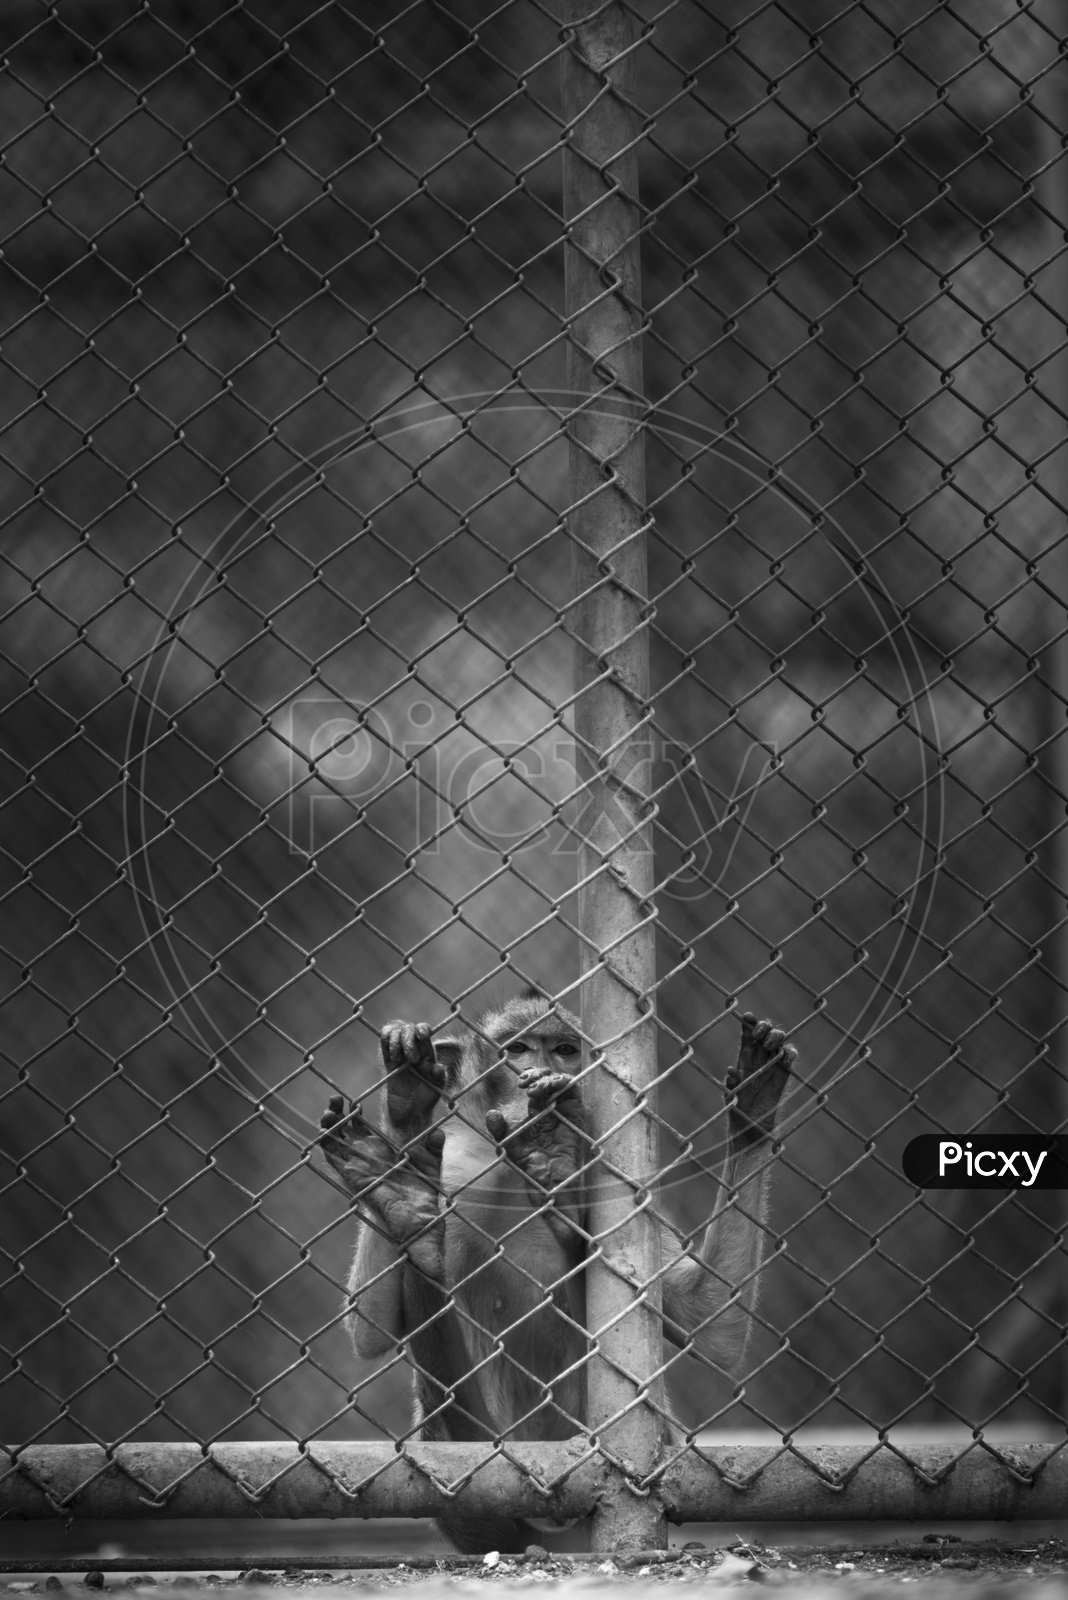 Wildlife Monkeys in cage, Thailand